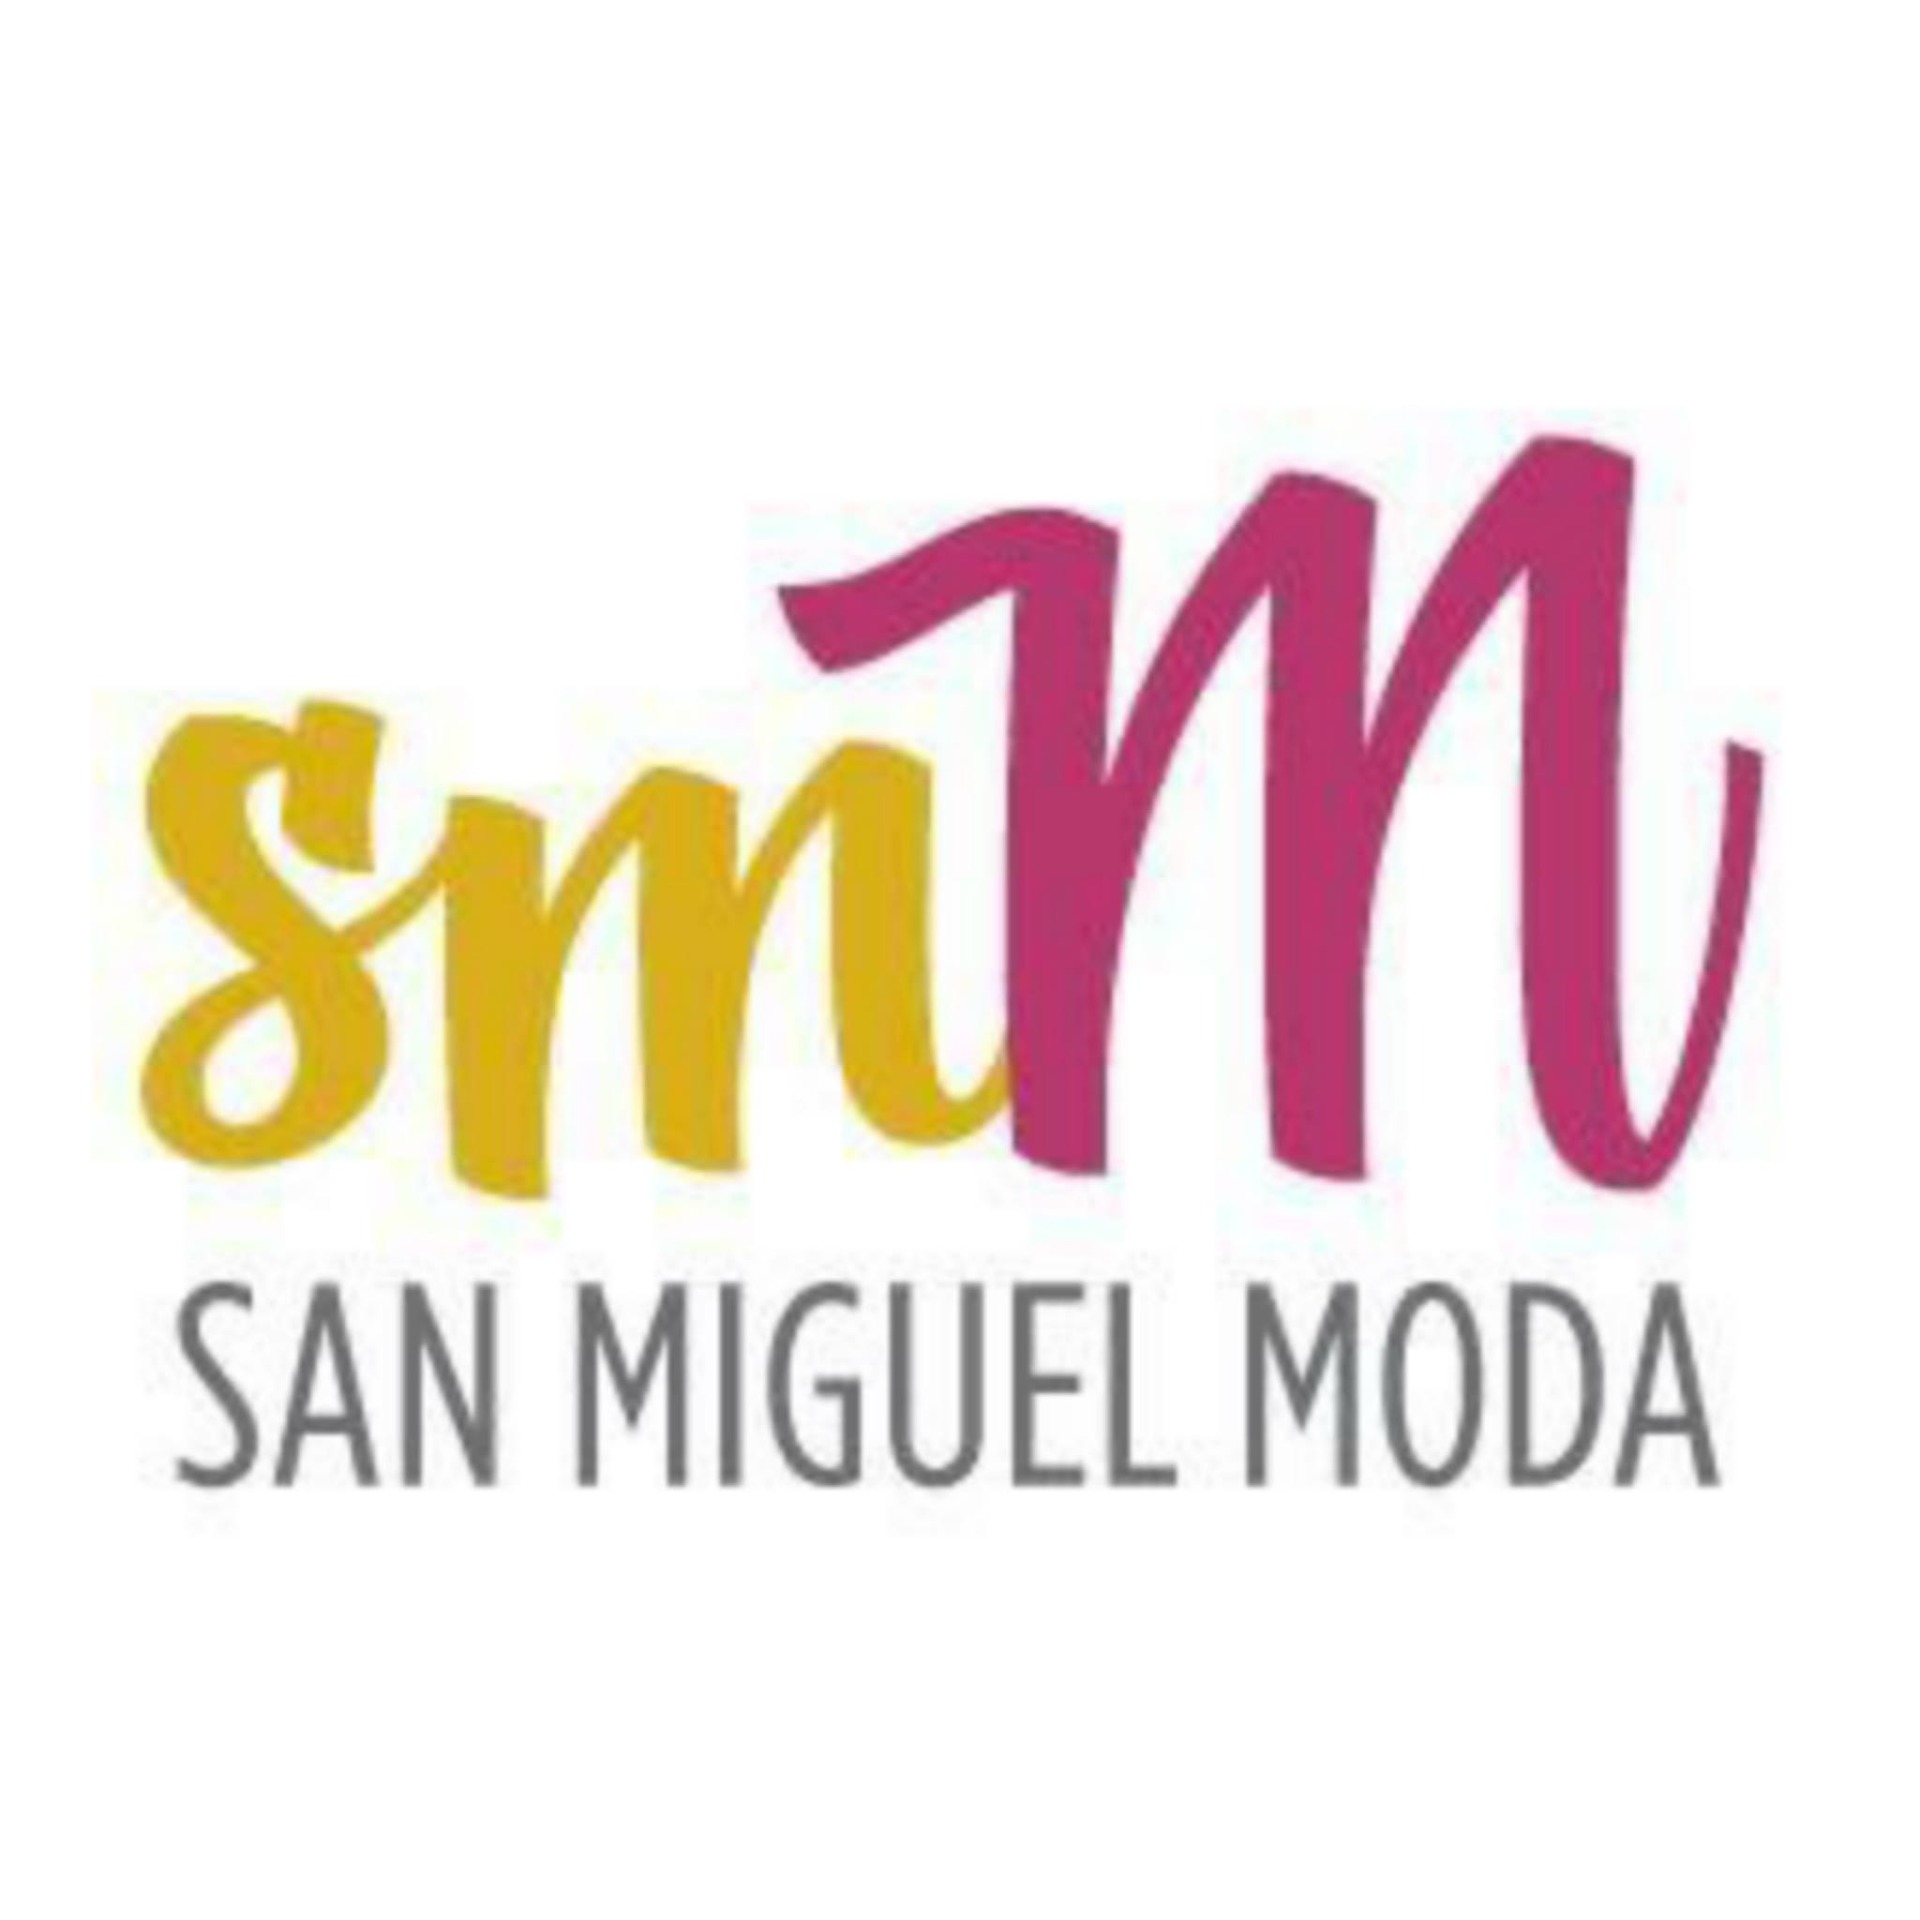 San Miguel Moda